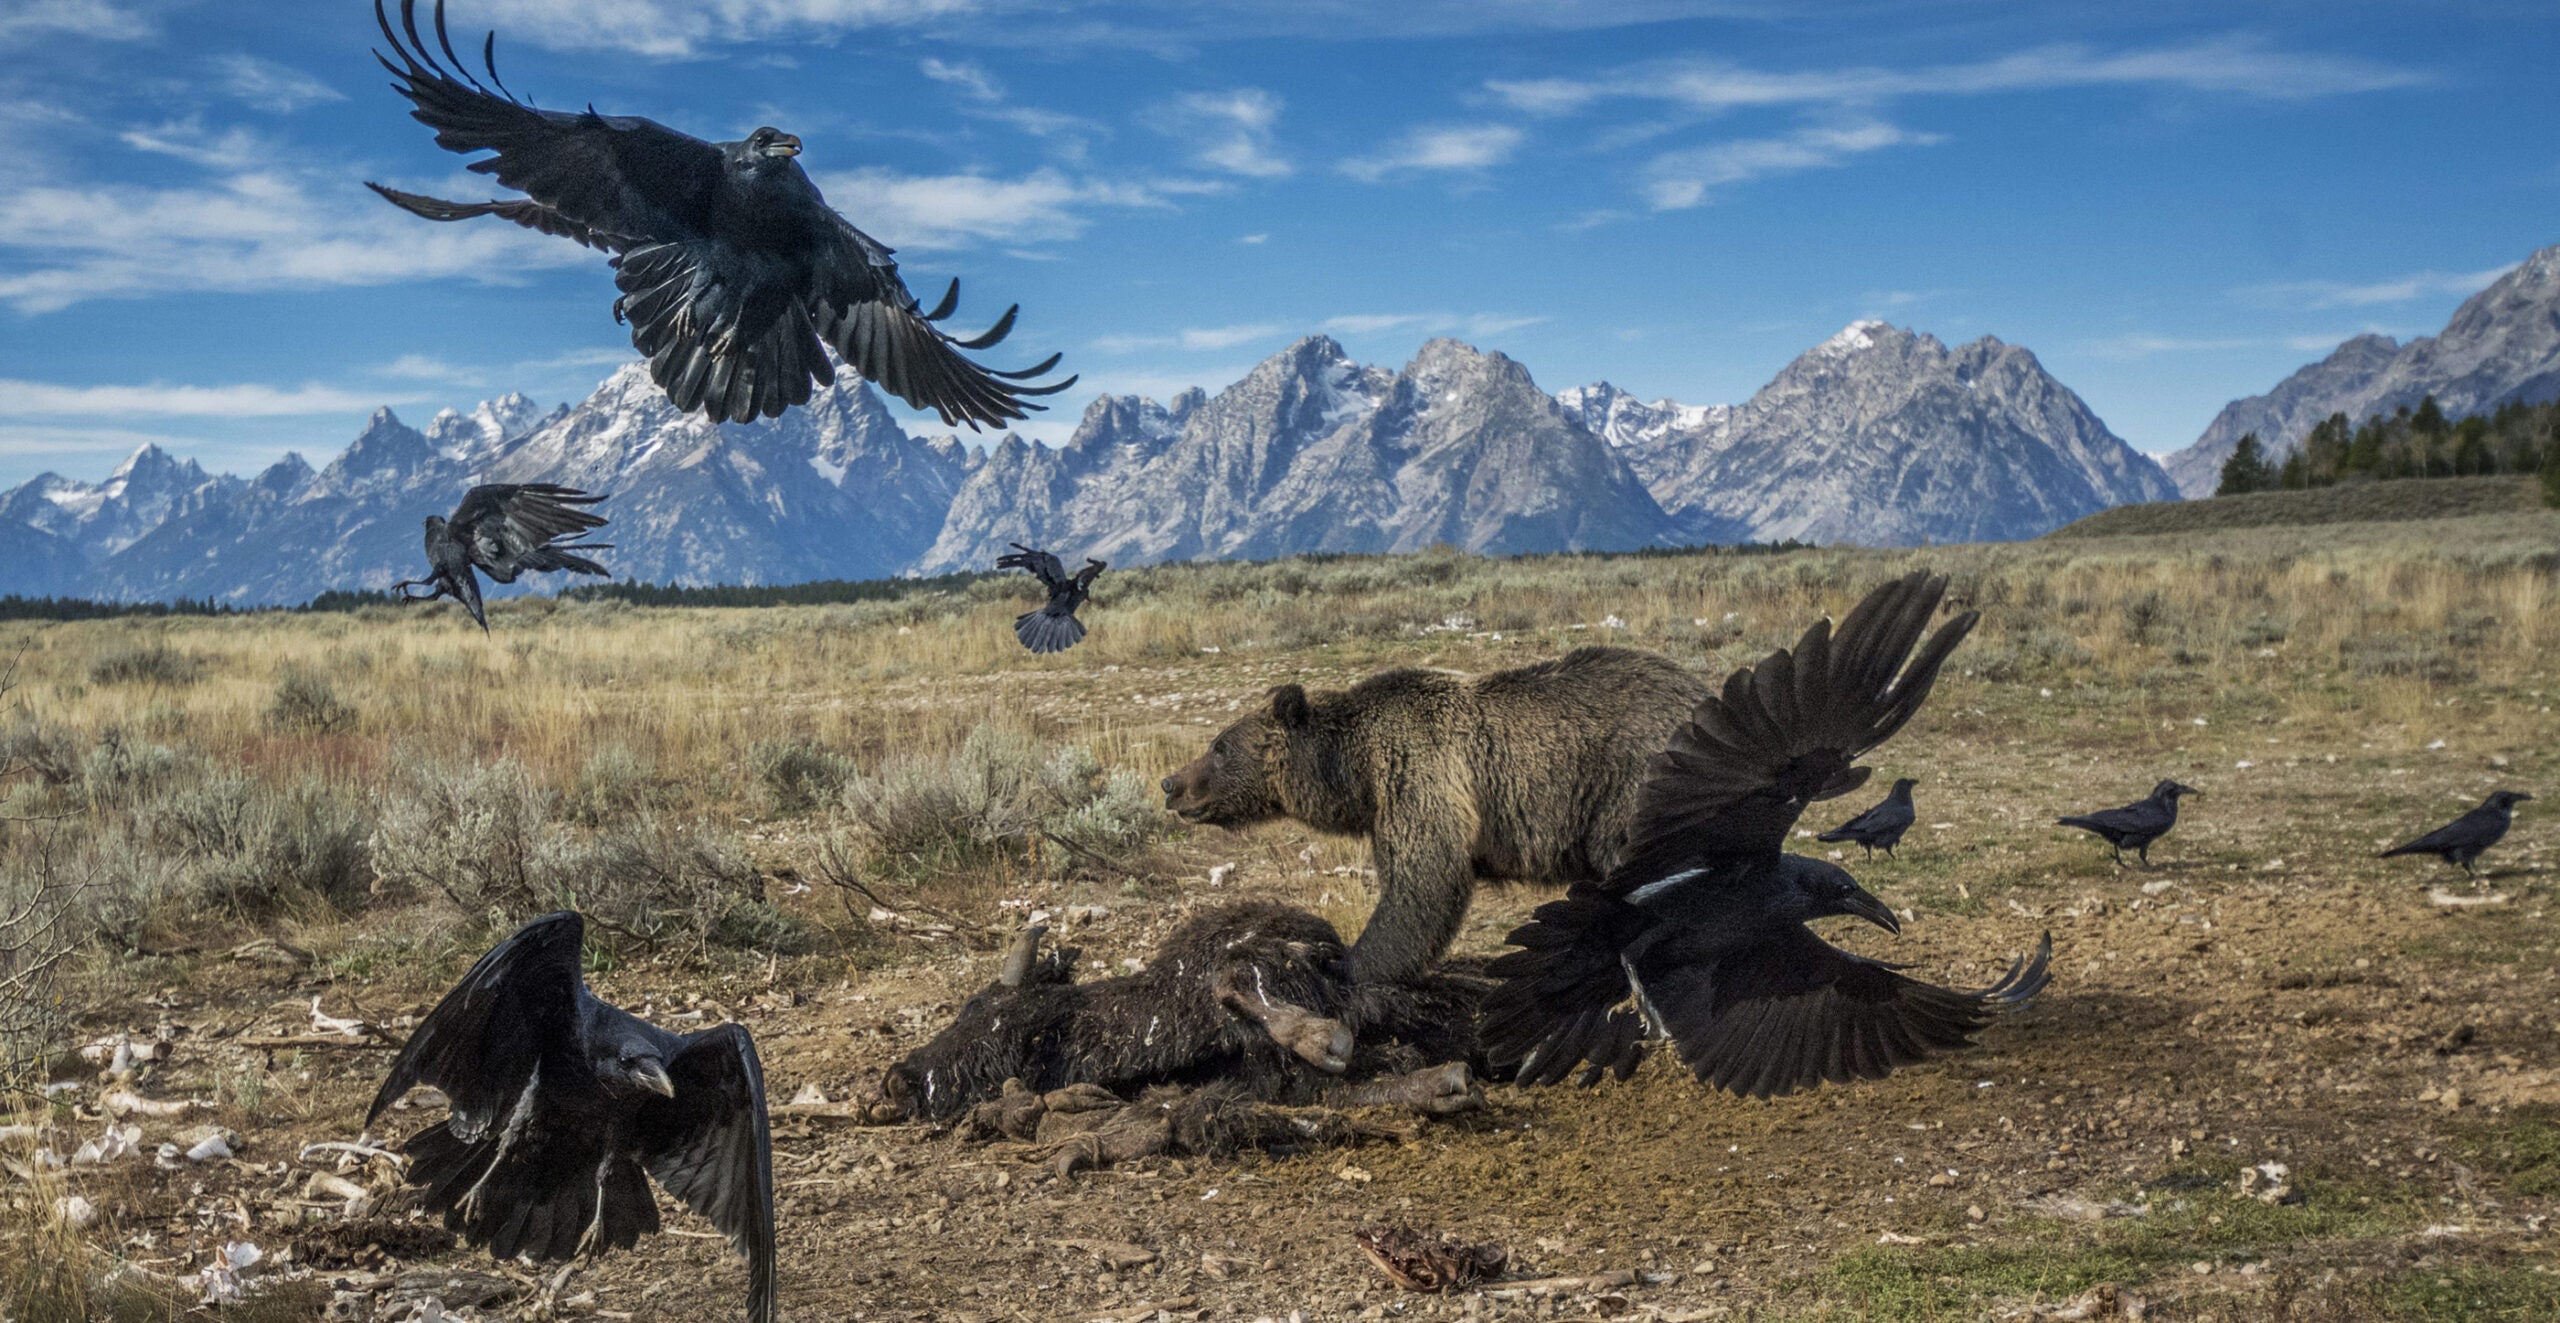 âBear and Ravens on Carcass, Grand Teton National Park, Wyoming, U.S.A., 2014,â by Charlie Hamilton James.